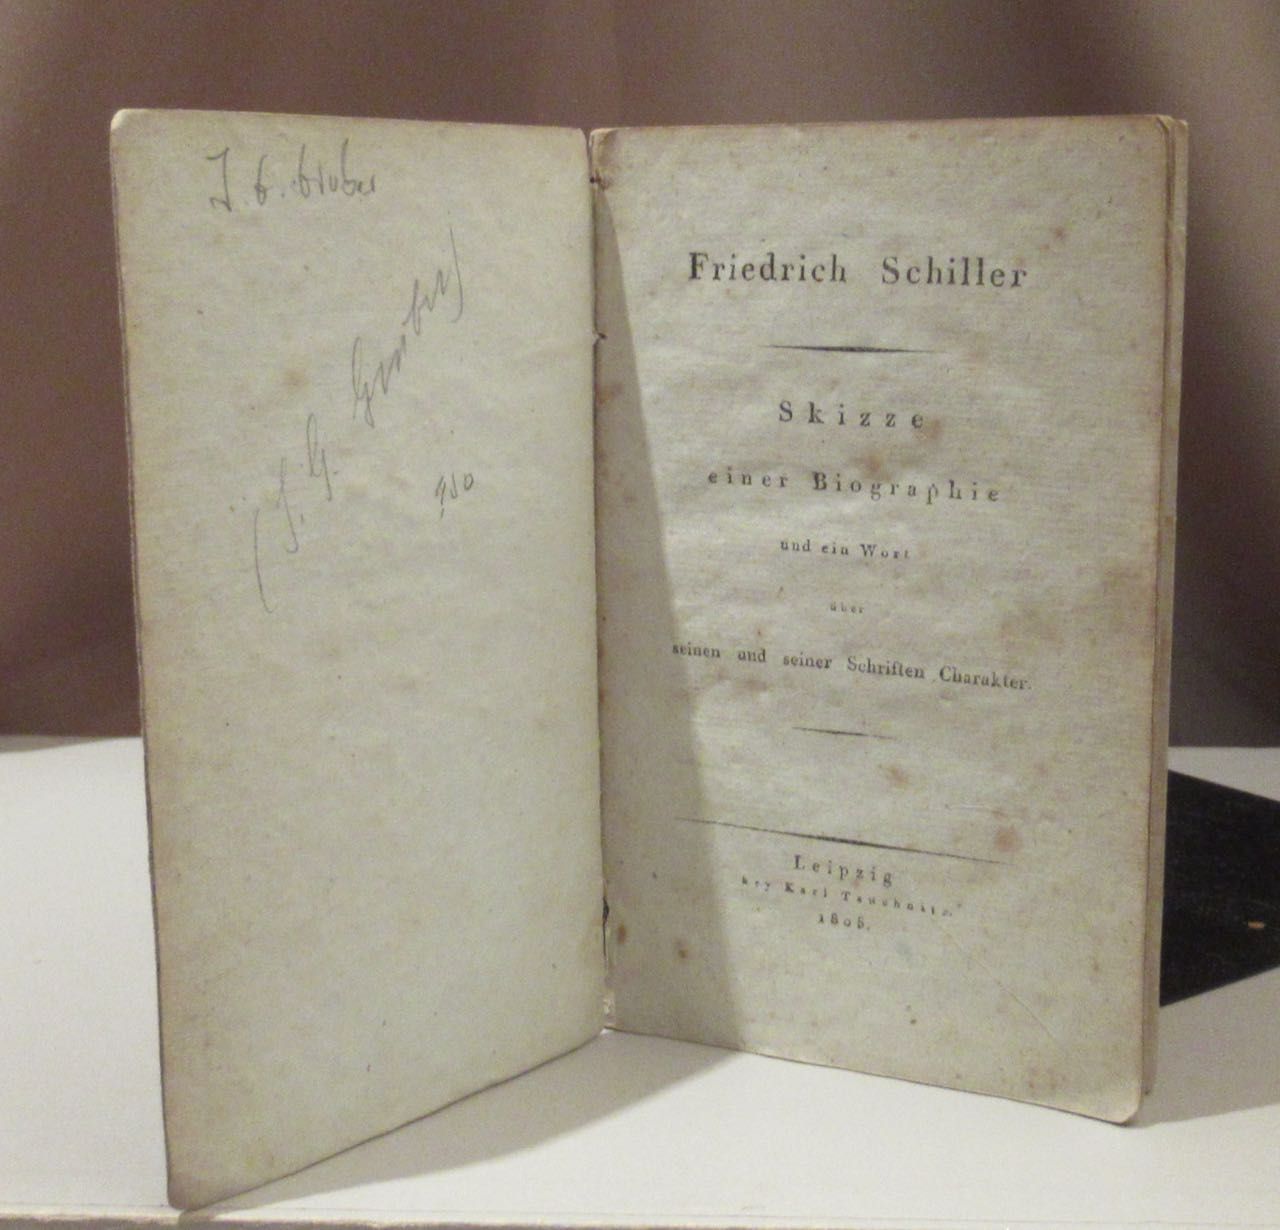 Friedrich Schiller. Skizze einer Biographie und ein Wort über seinen und seiner Schriften Charakter. - Gruber, Johann Gottfried (anonym).